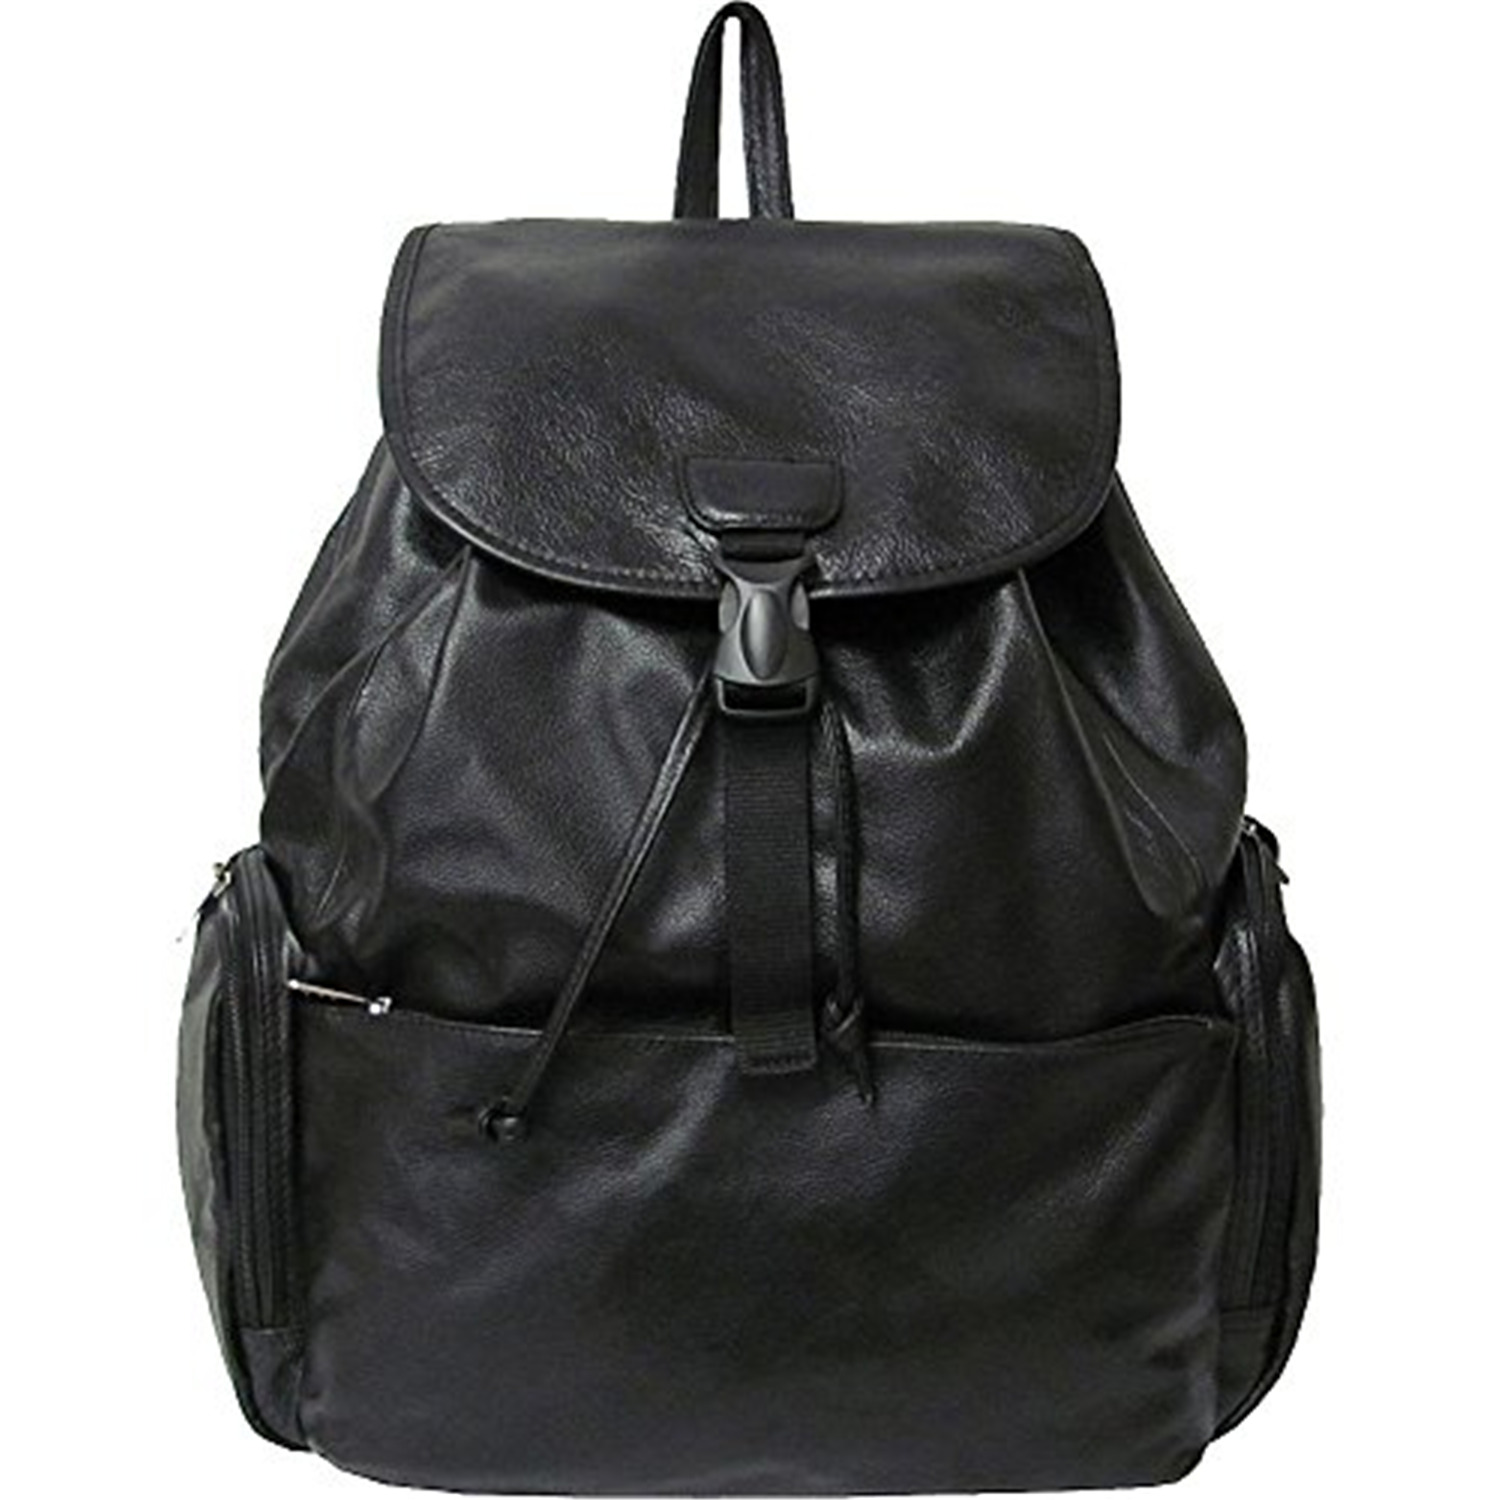 AmeriLeather Jumbo Leather Backpack - image 1 of 7